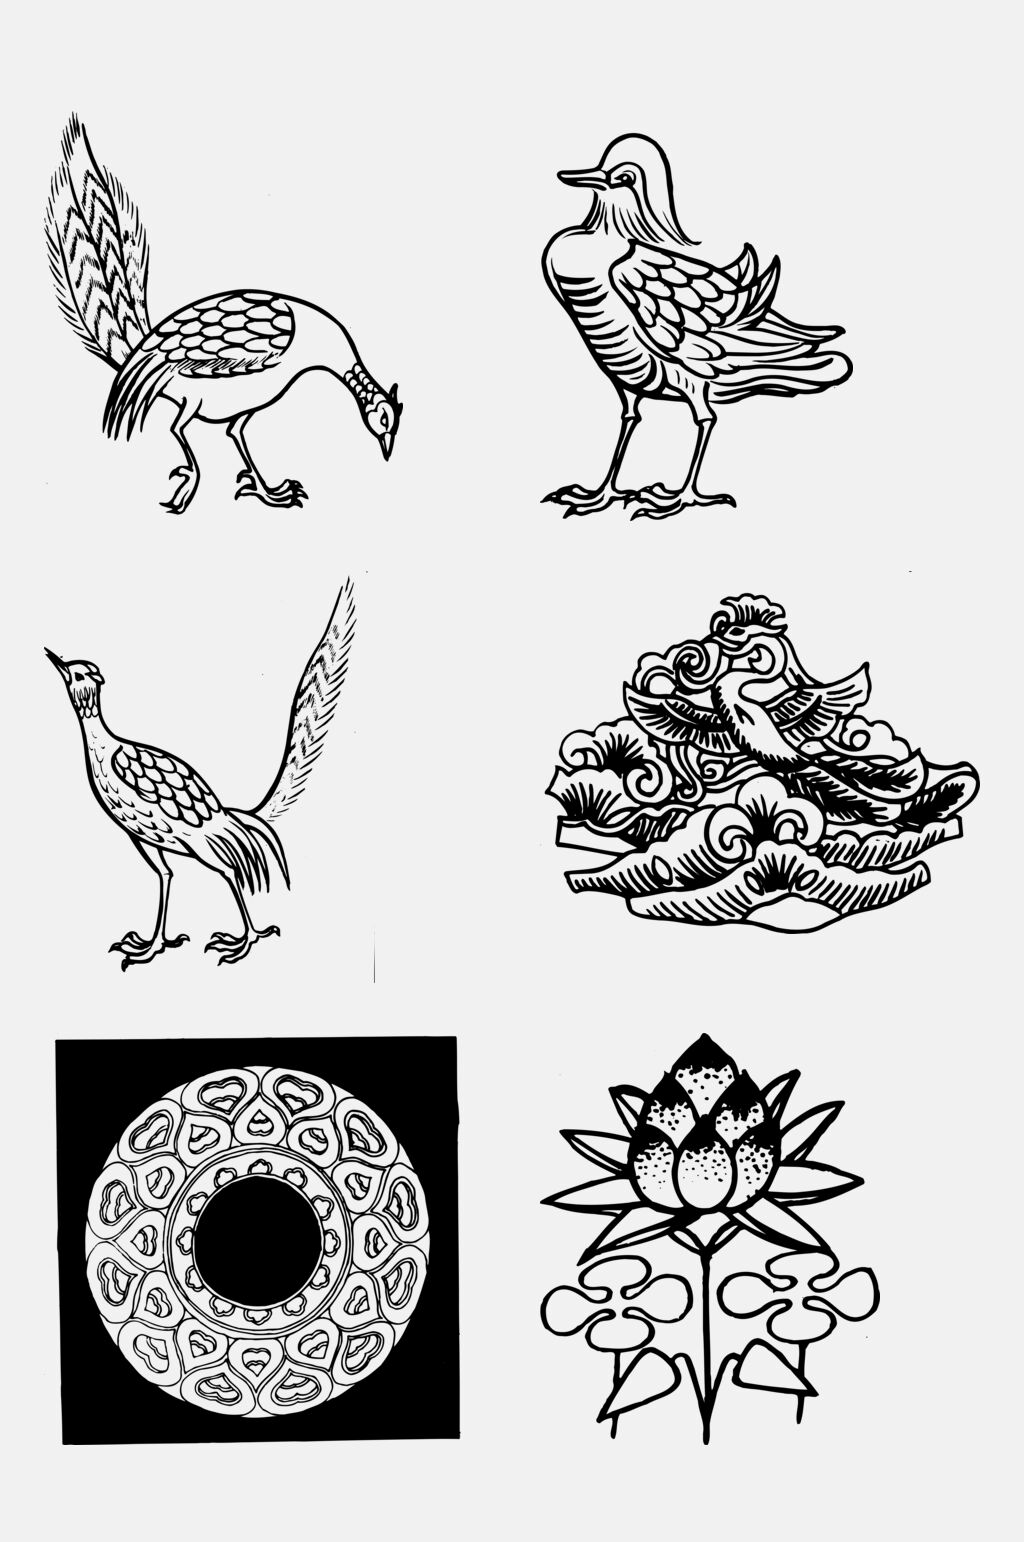 隋唐时期的纹样特征图片